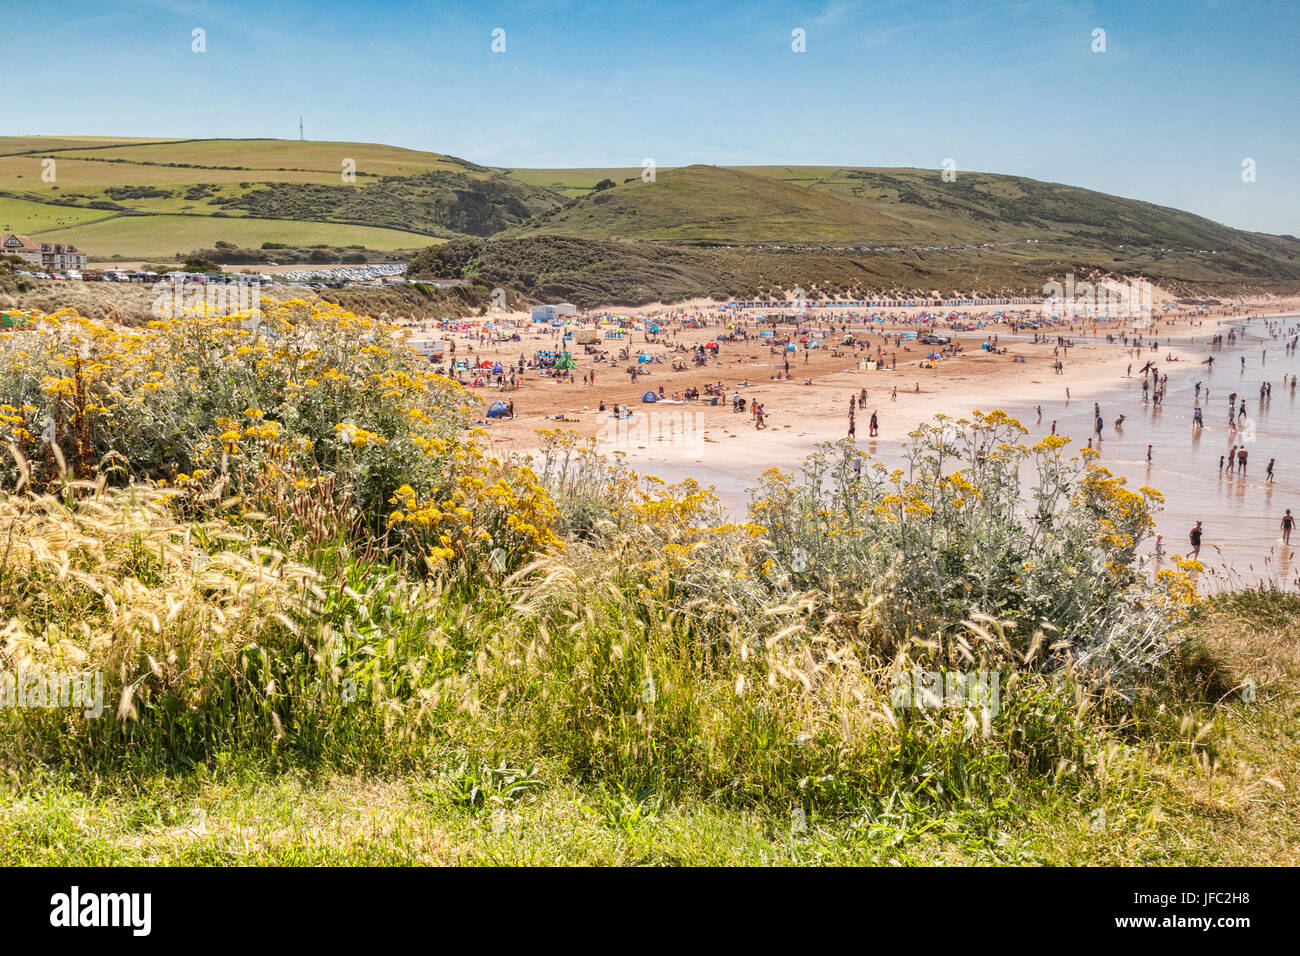 17 Juin 2017 : Woolacombe, North Devon, England, UK - la plage animée sur l'un des jours les plus chauds de l'année. Banque D'Images